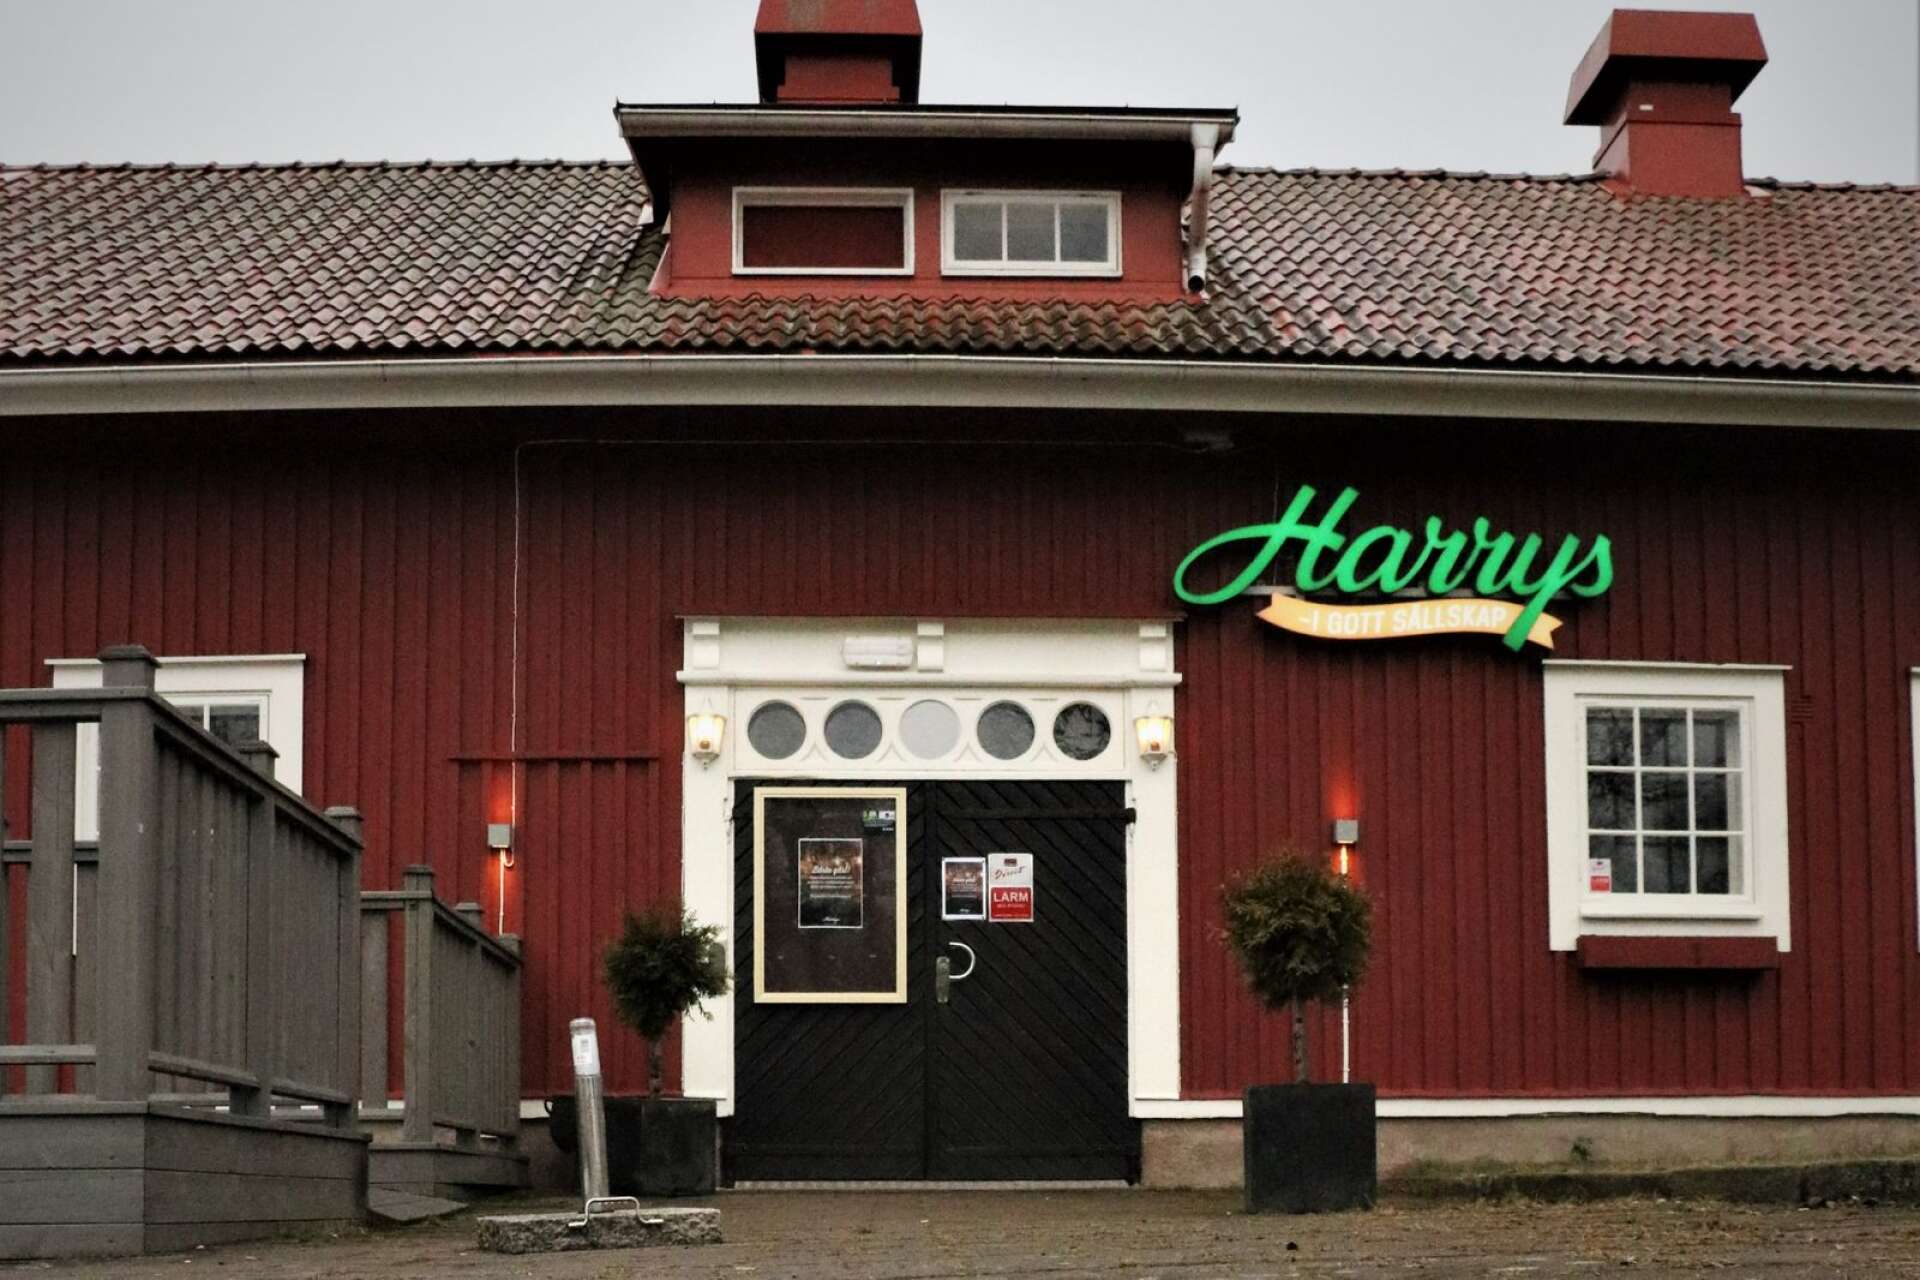 Byggnaden i Åmål där tidigare Harrys låg har kommit flera Åmålsföretag till nytta, menar insändarskribenten.